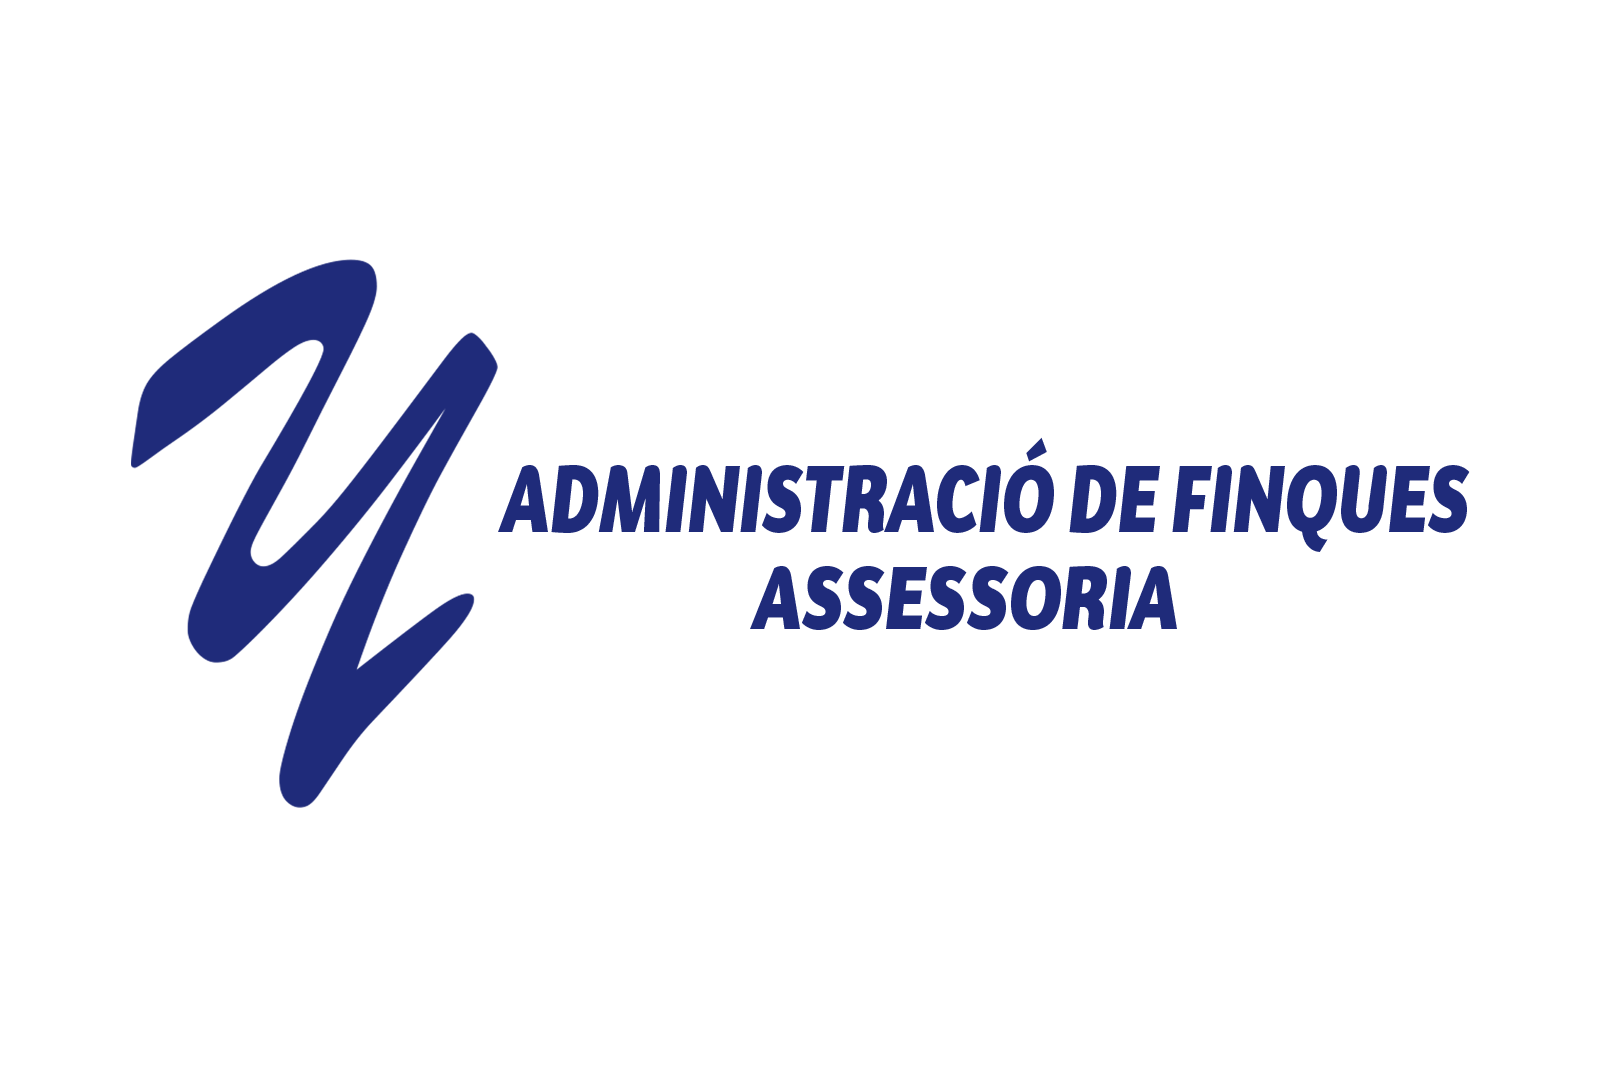 YCL ADMINISTRACIÓ DE FINQUES I ASSESSORIA